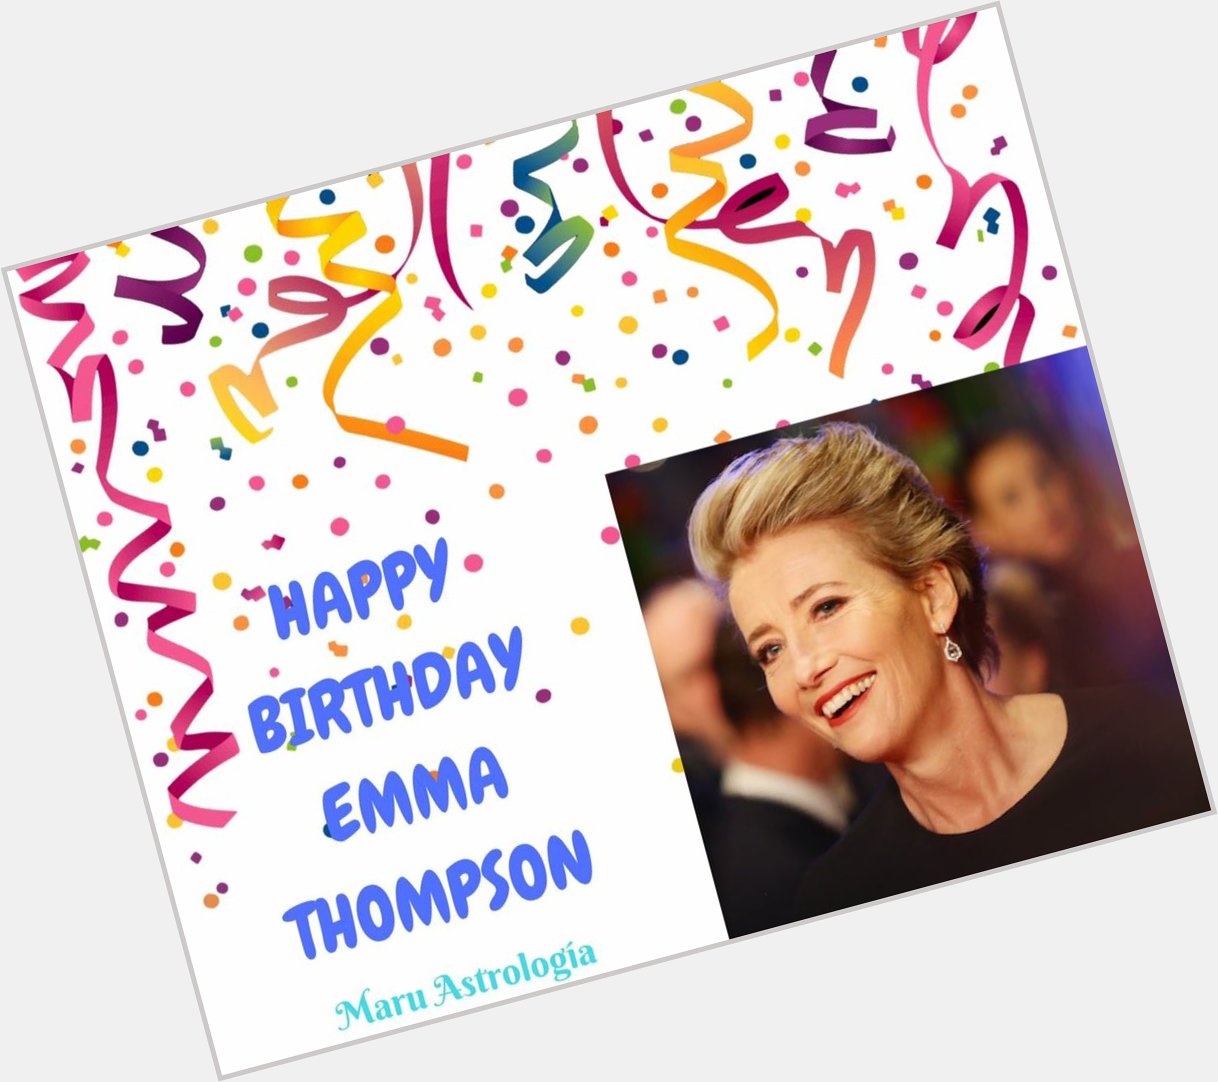 HAPPY BIRTHDAY EMMA THOMPSON!!!   